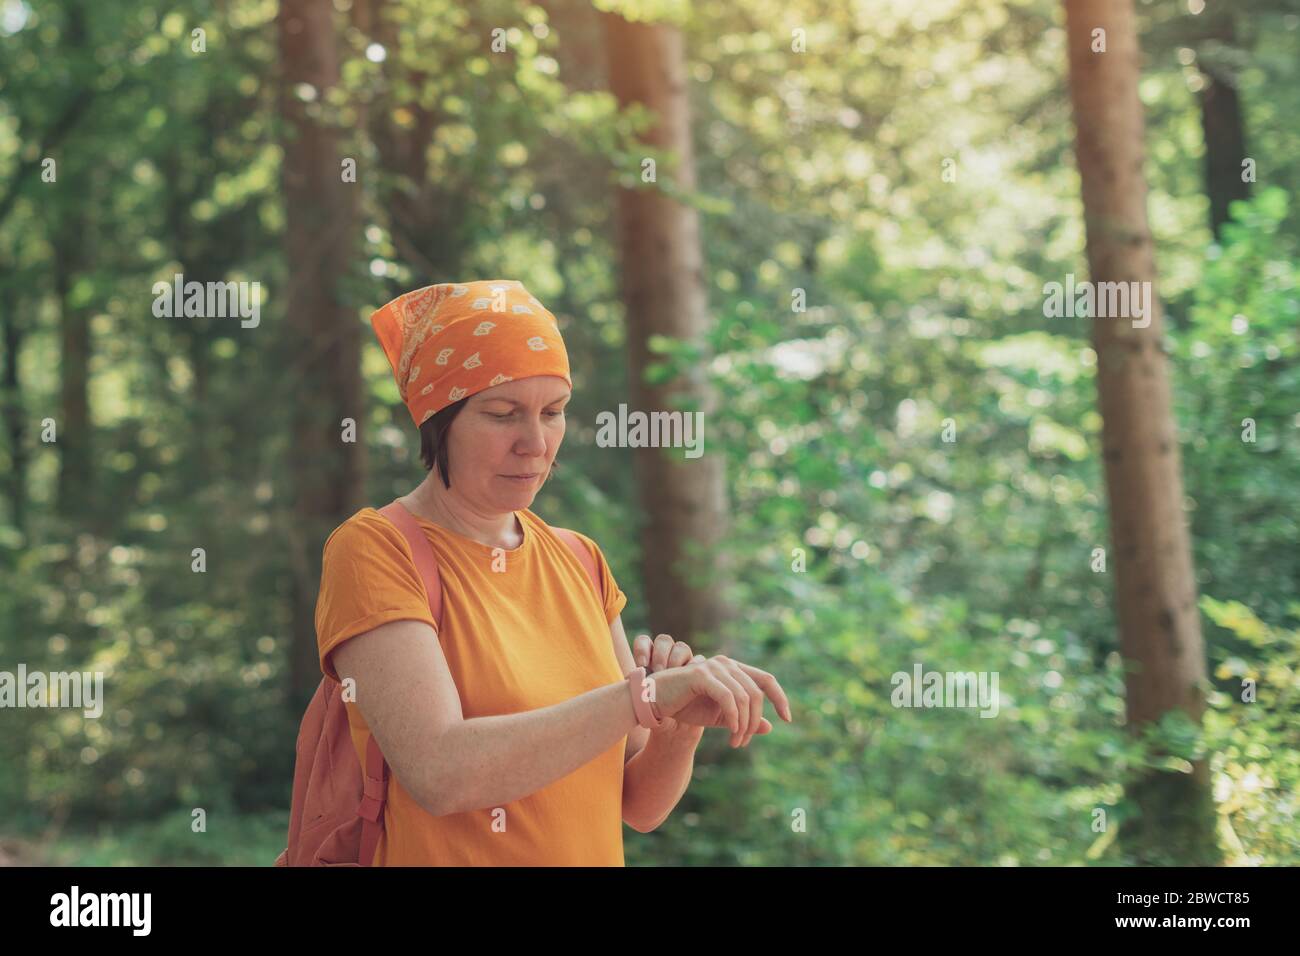 Frau Wanderer mit Smart Fitness Tracker Armband während Trekking in der Natur. Weibliche Wanderung im Wald und Überprüfung auf ihre moderne Gadget. Stockfoto